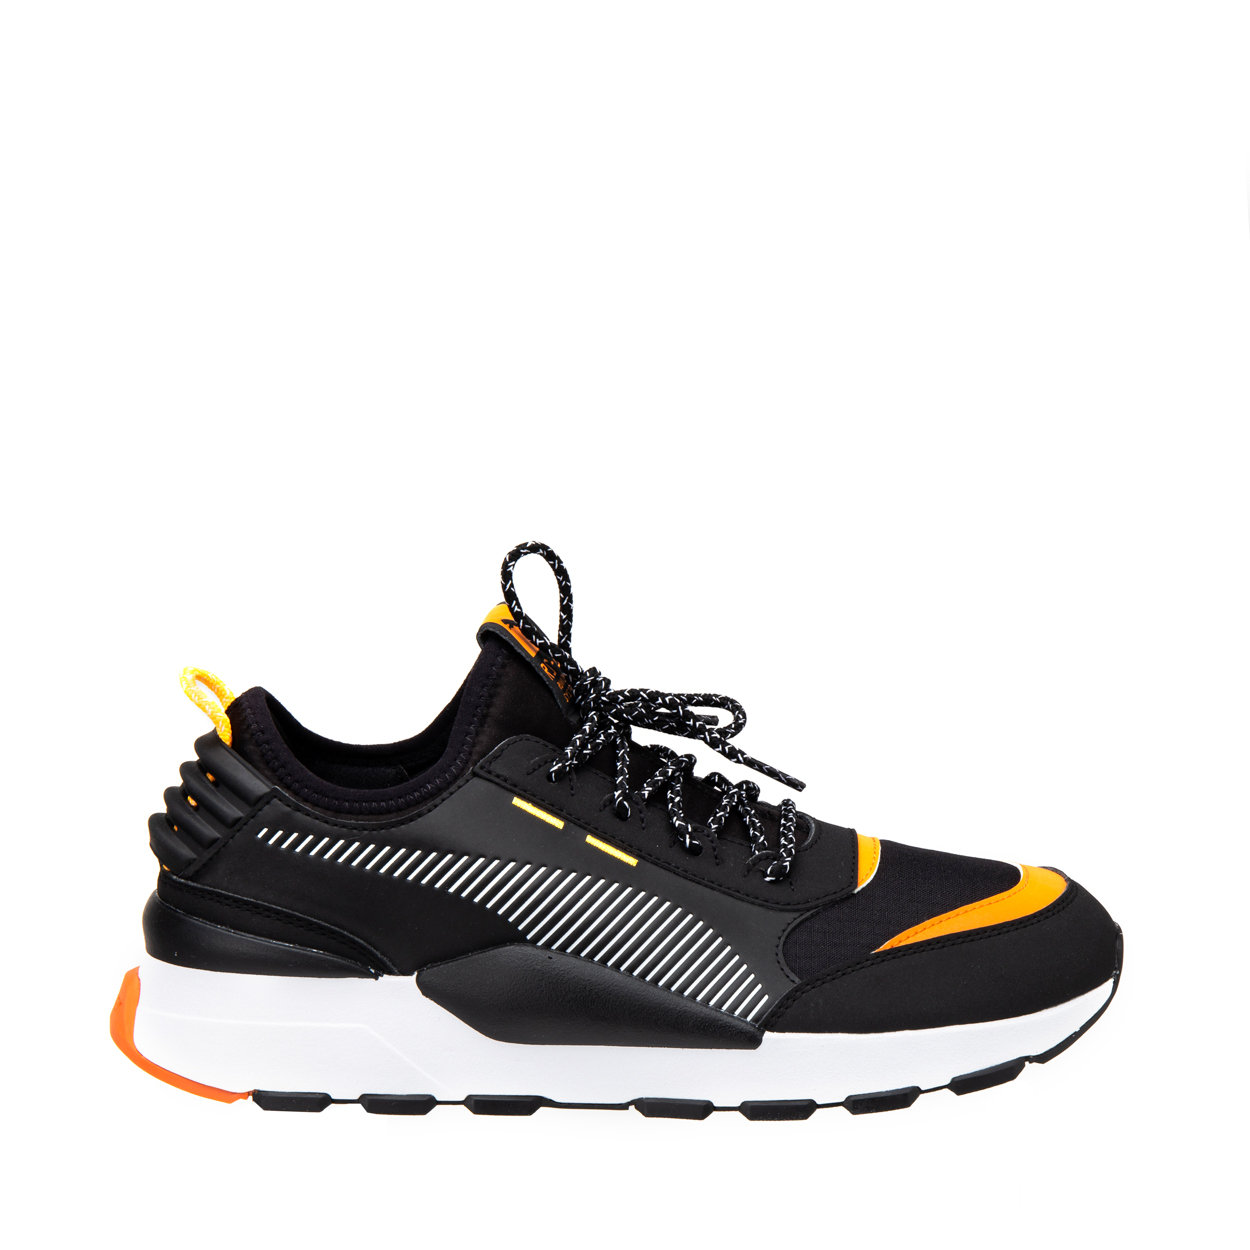 Sneakers RS-0 Trail nere e arancioni - Puma Sportswear - Acquista su Ventis.